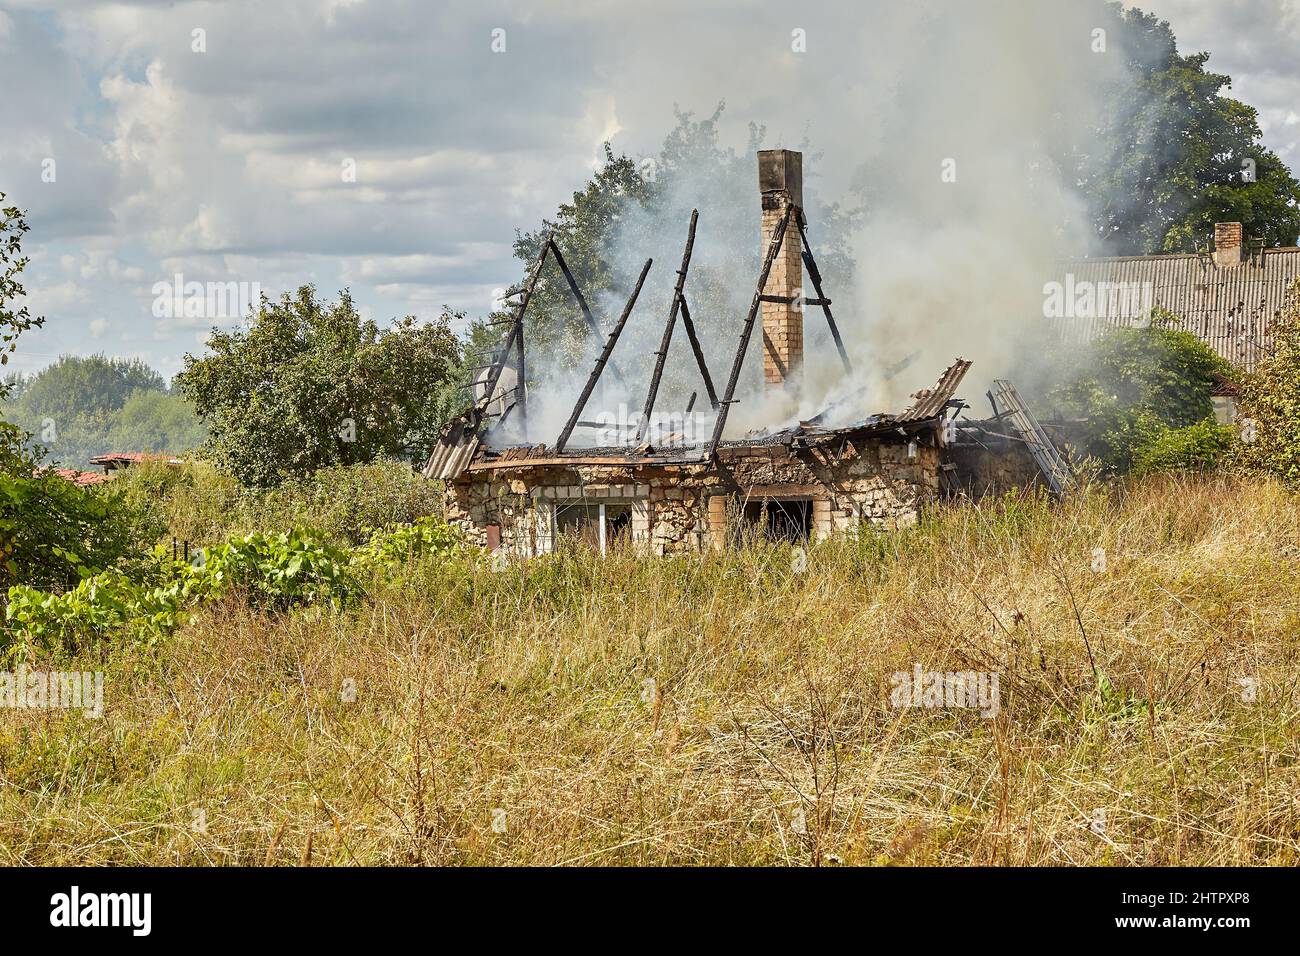 July 23, 2021, Dole island, Latvia: extinguishing the fire destroyed the village house Stock Photo